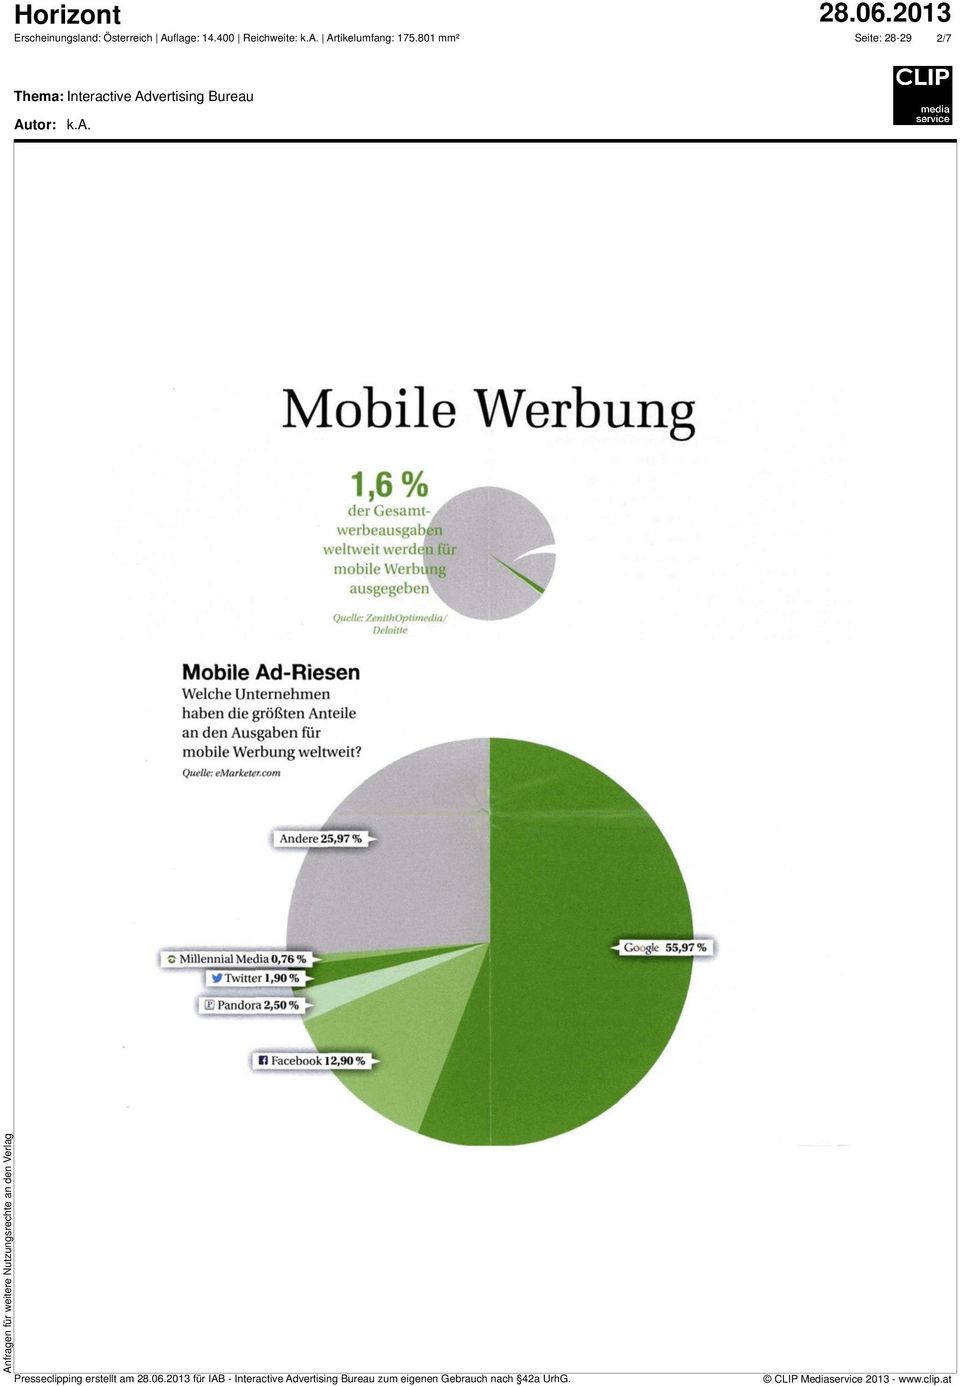 esfarketercom Mobile Werbung 1,6% der Gesamt- %verbeausgaben 4e weltweit werden für mobile Werbun